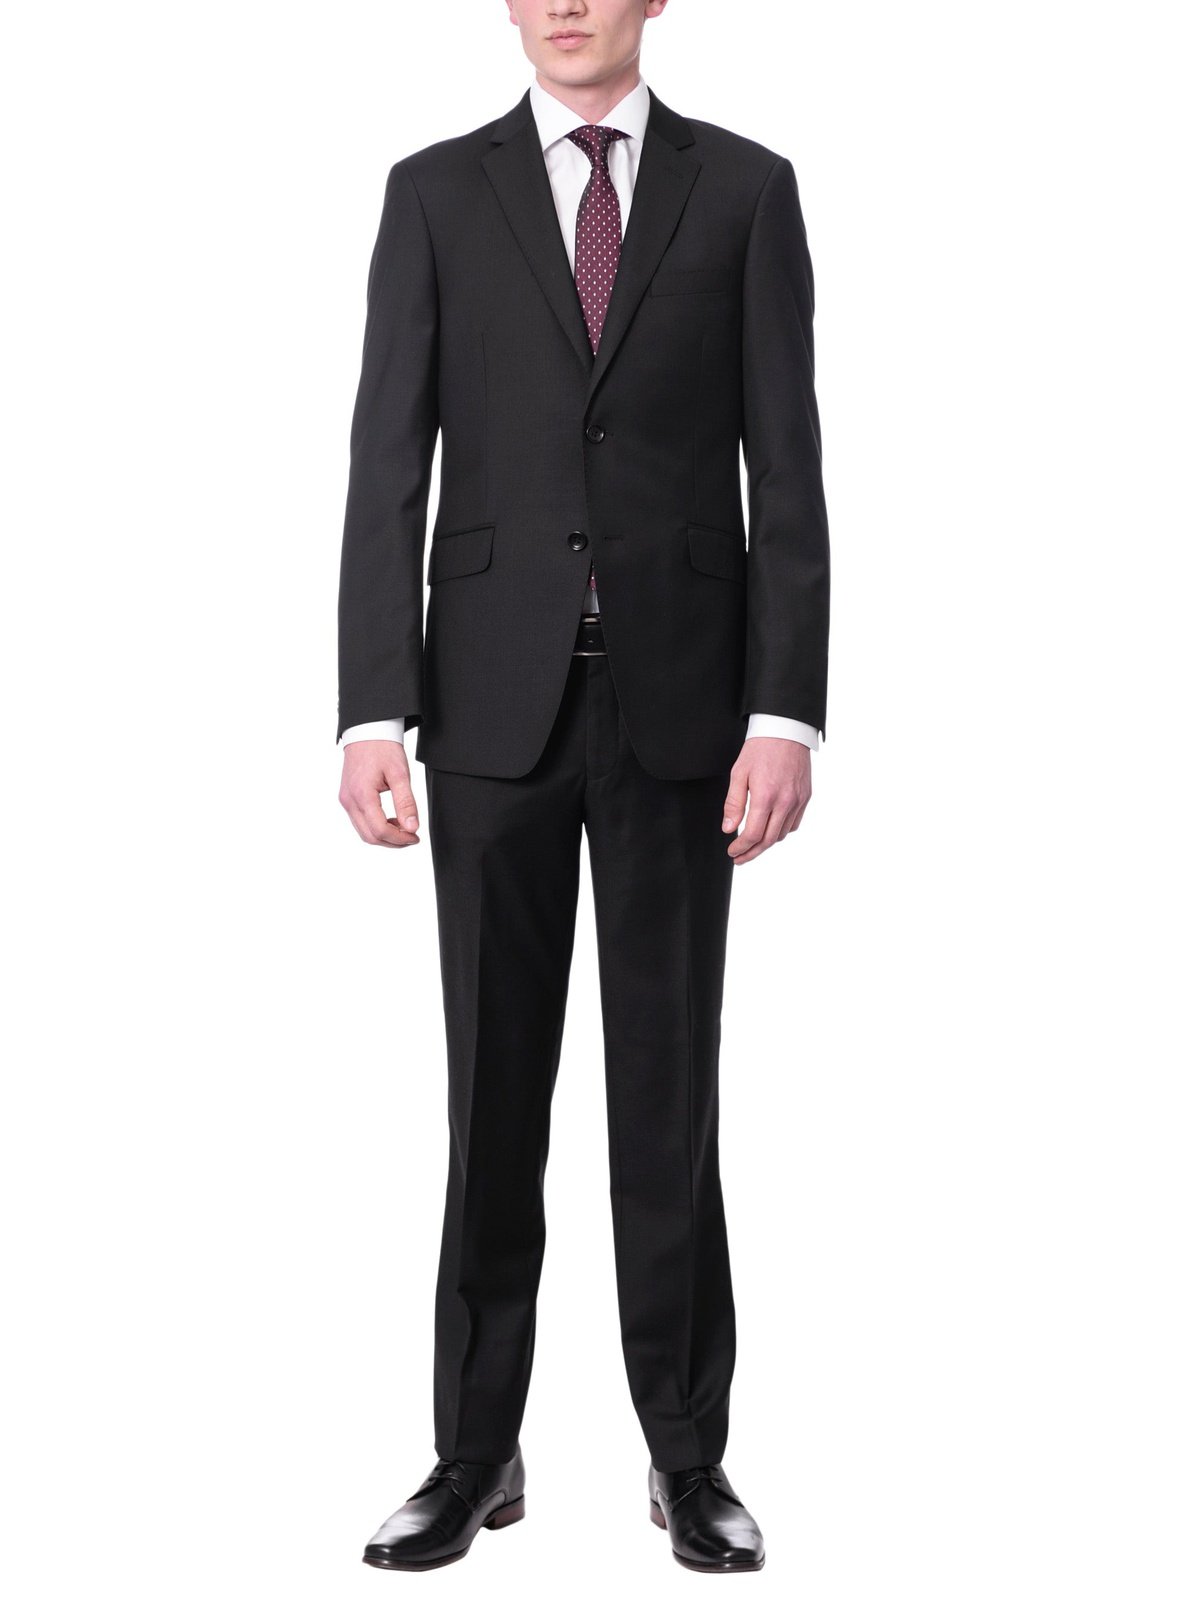 Label M SUITS Men's Euro Slim Fit Solid Black Two Button 2 Piece 100% Wool Suit